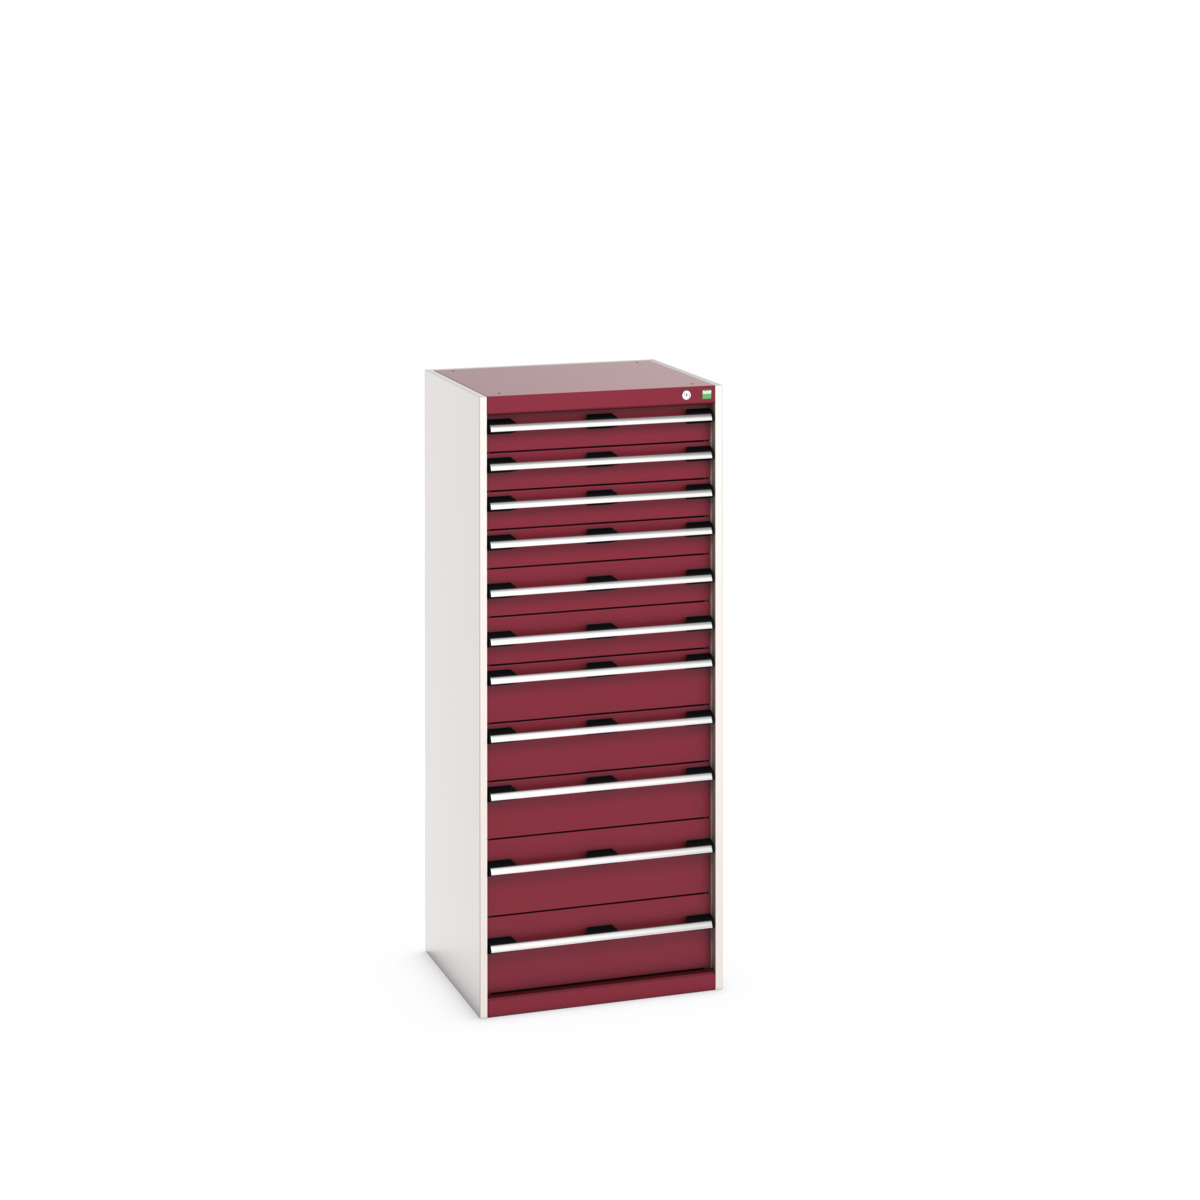 40019156.24V - cubio drawer cabinet